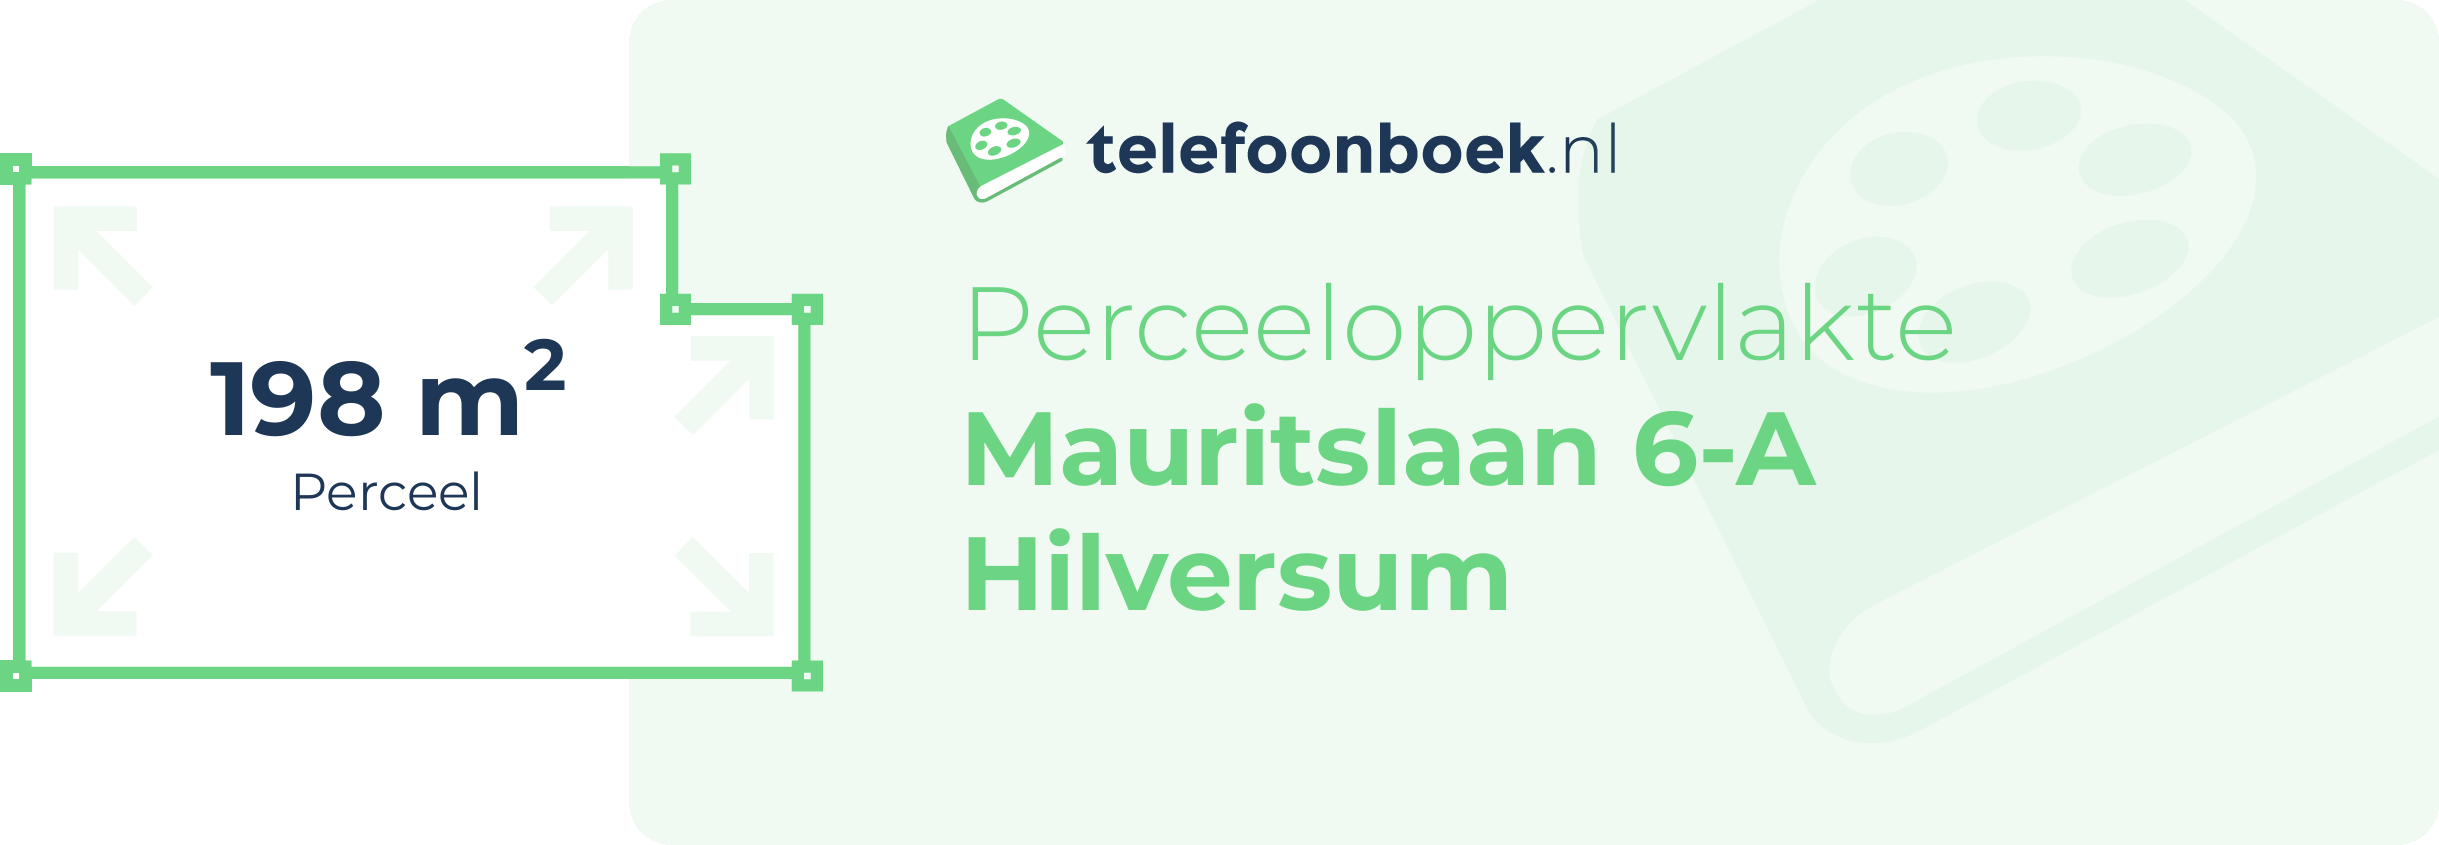 Perceeloppervlakte Mauritslaan 6-A Hilversum